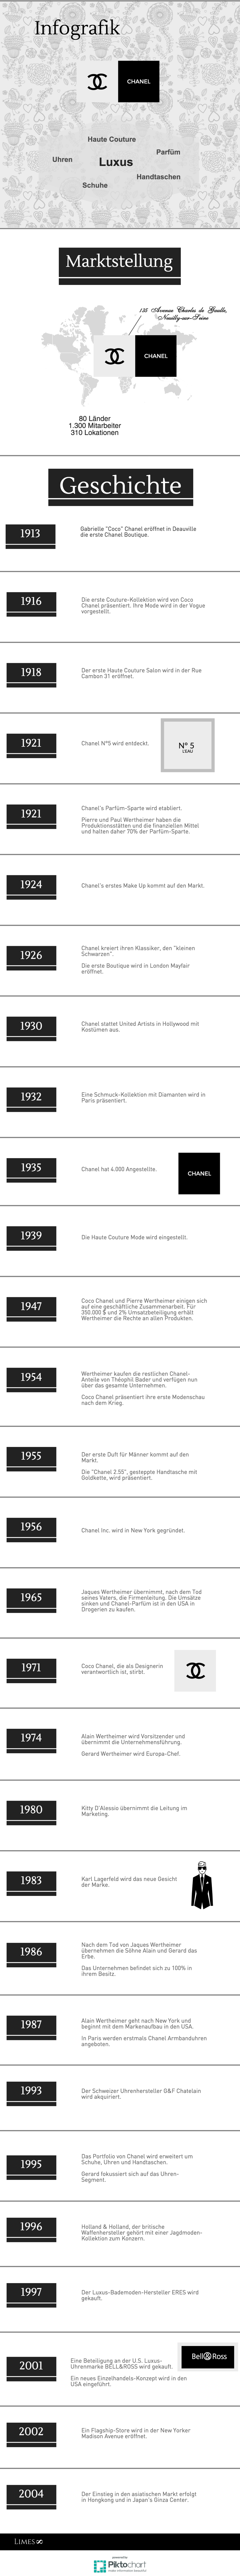 Informationsgrafik zum Unternehmen Chanel